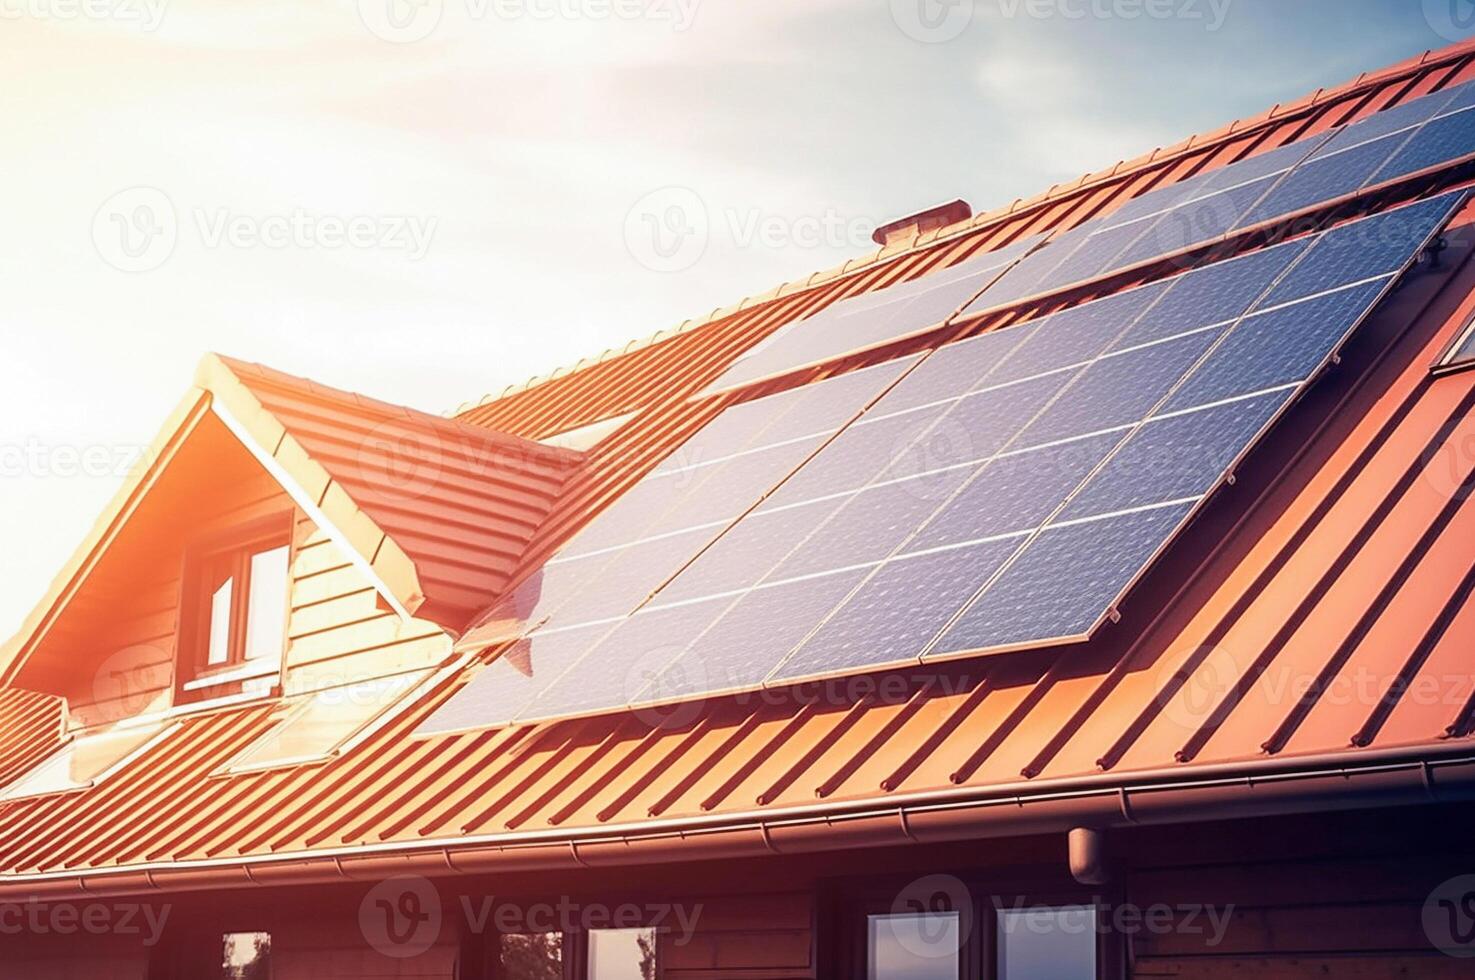 ai generativ. sol- paneler installerad och i använda sig av på tak av Hem foto